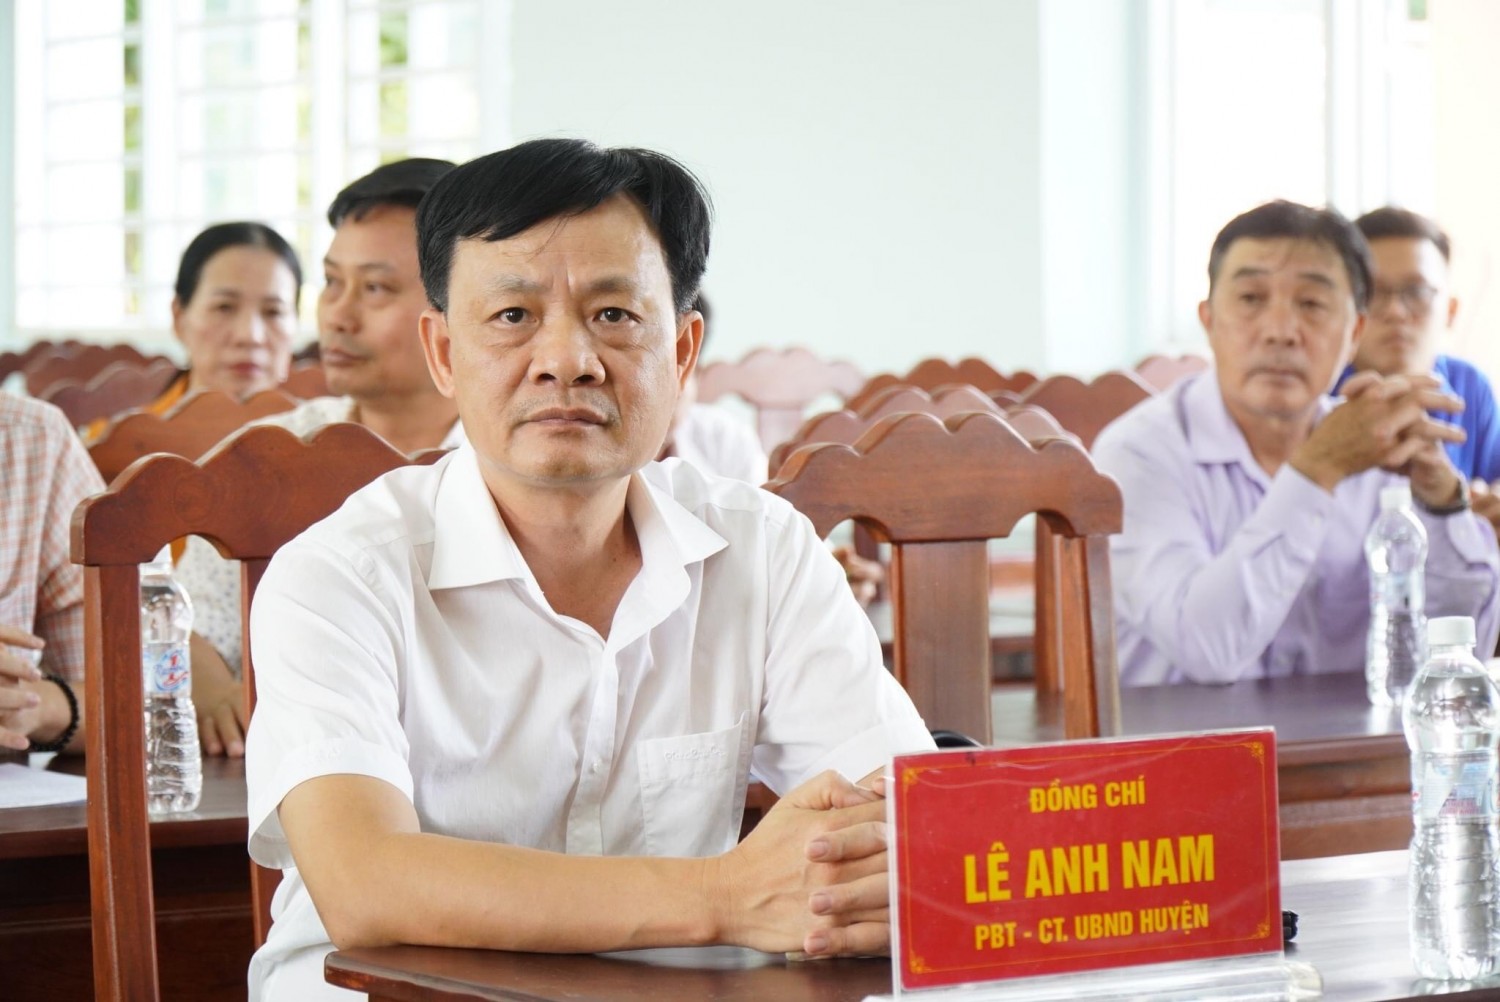 Phó Chủ tịch UBND xã Lê Đình Trung được giao phụ trách, điều hành hoạt động của UBND xã Long Tân.